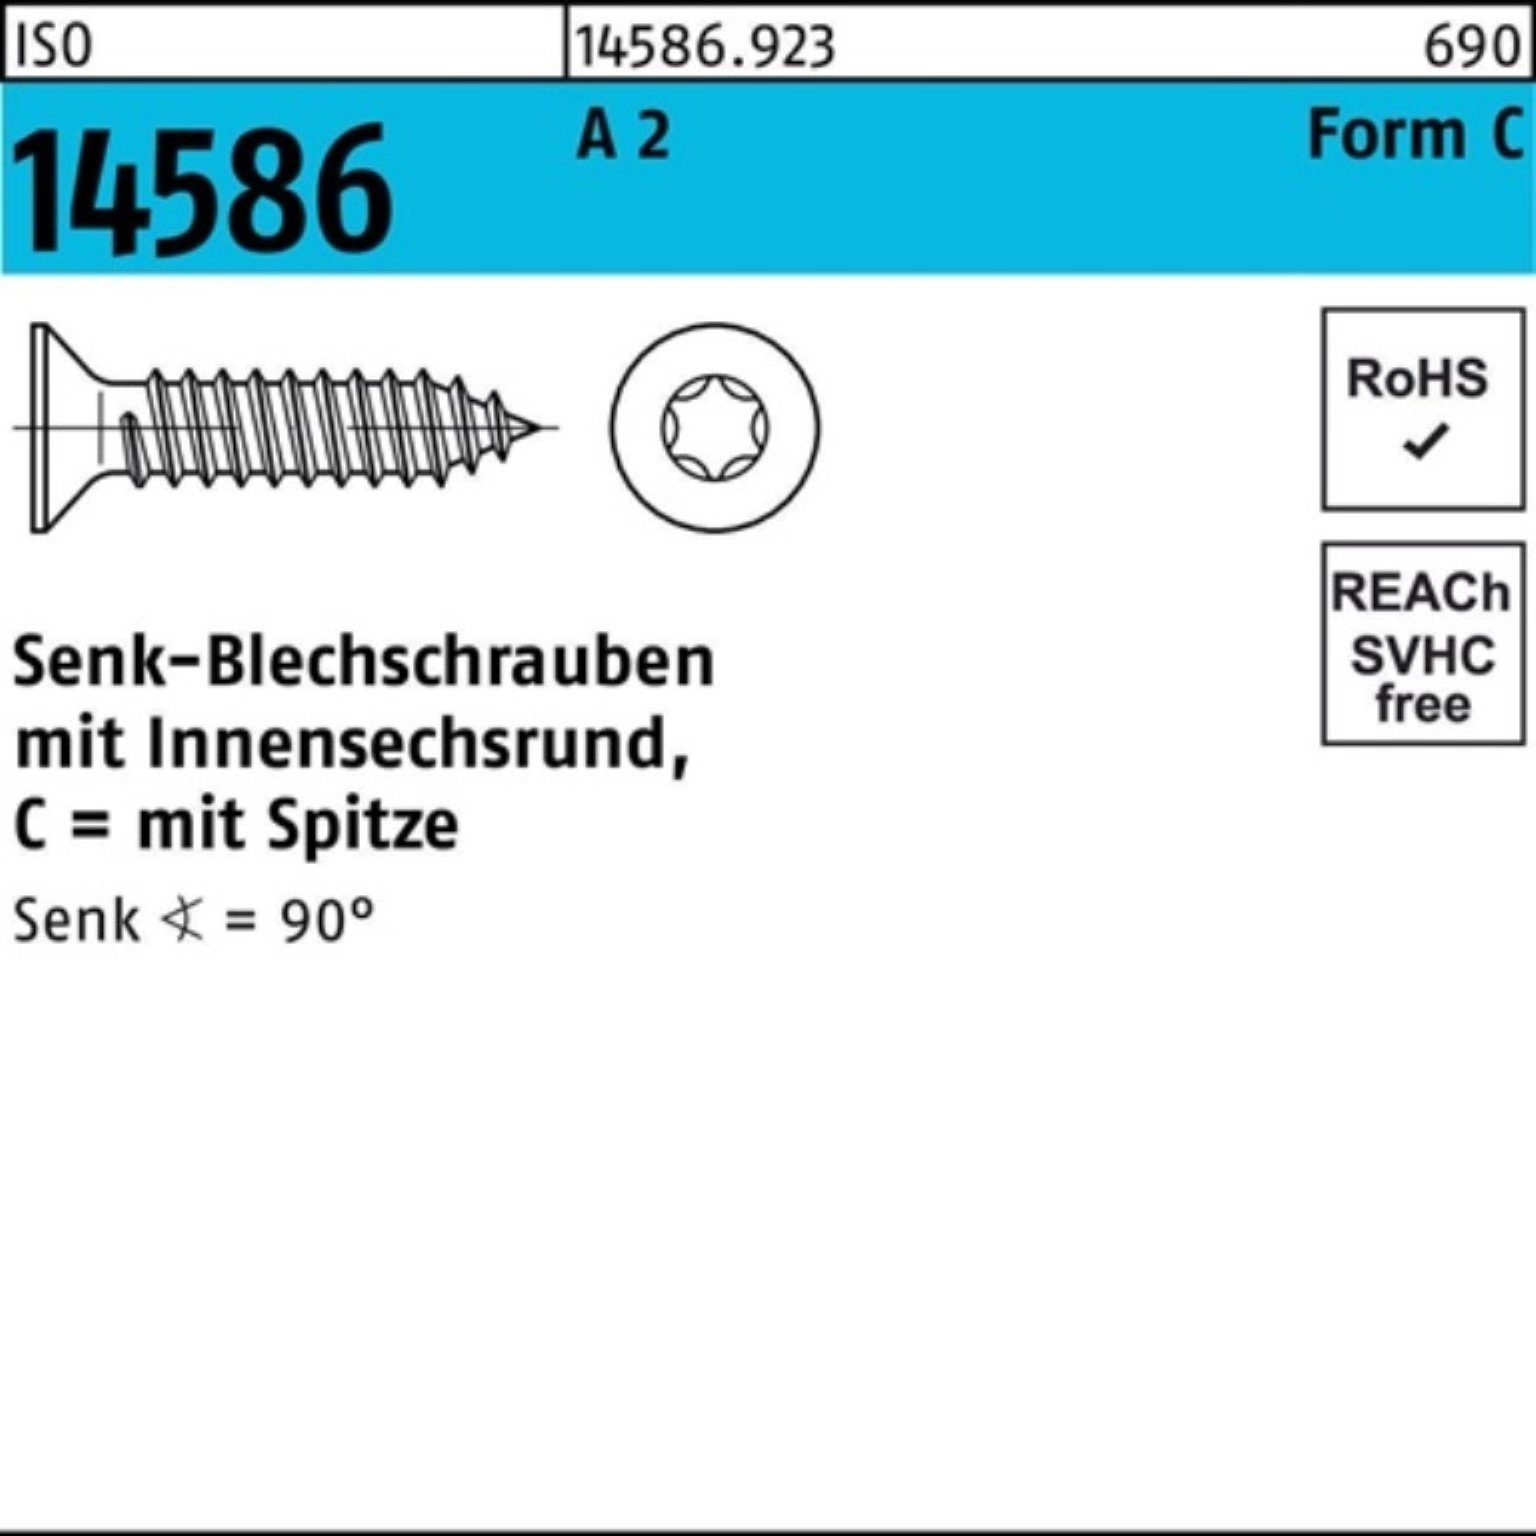 Reyher Schraube 250er Pack Senkblechschraube ISO 14586 ISR/Spitze 4,8x 55 -C T25 A 2 2